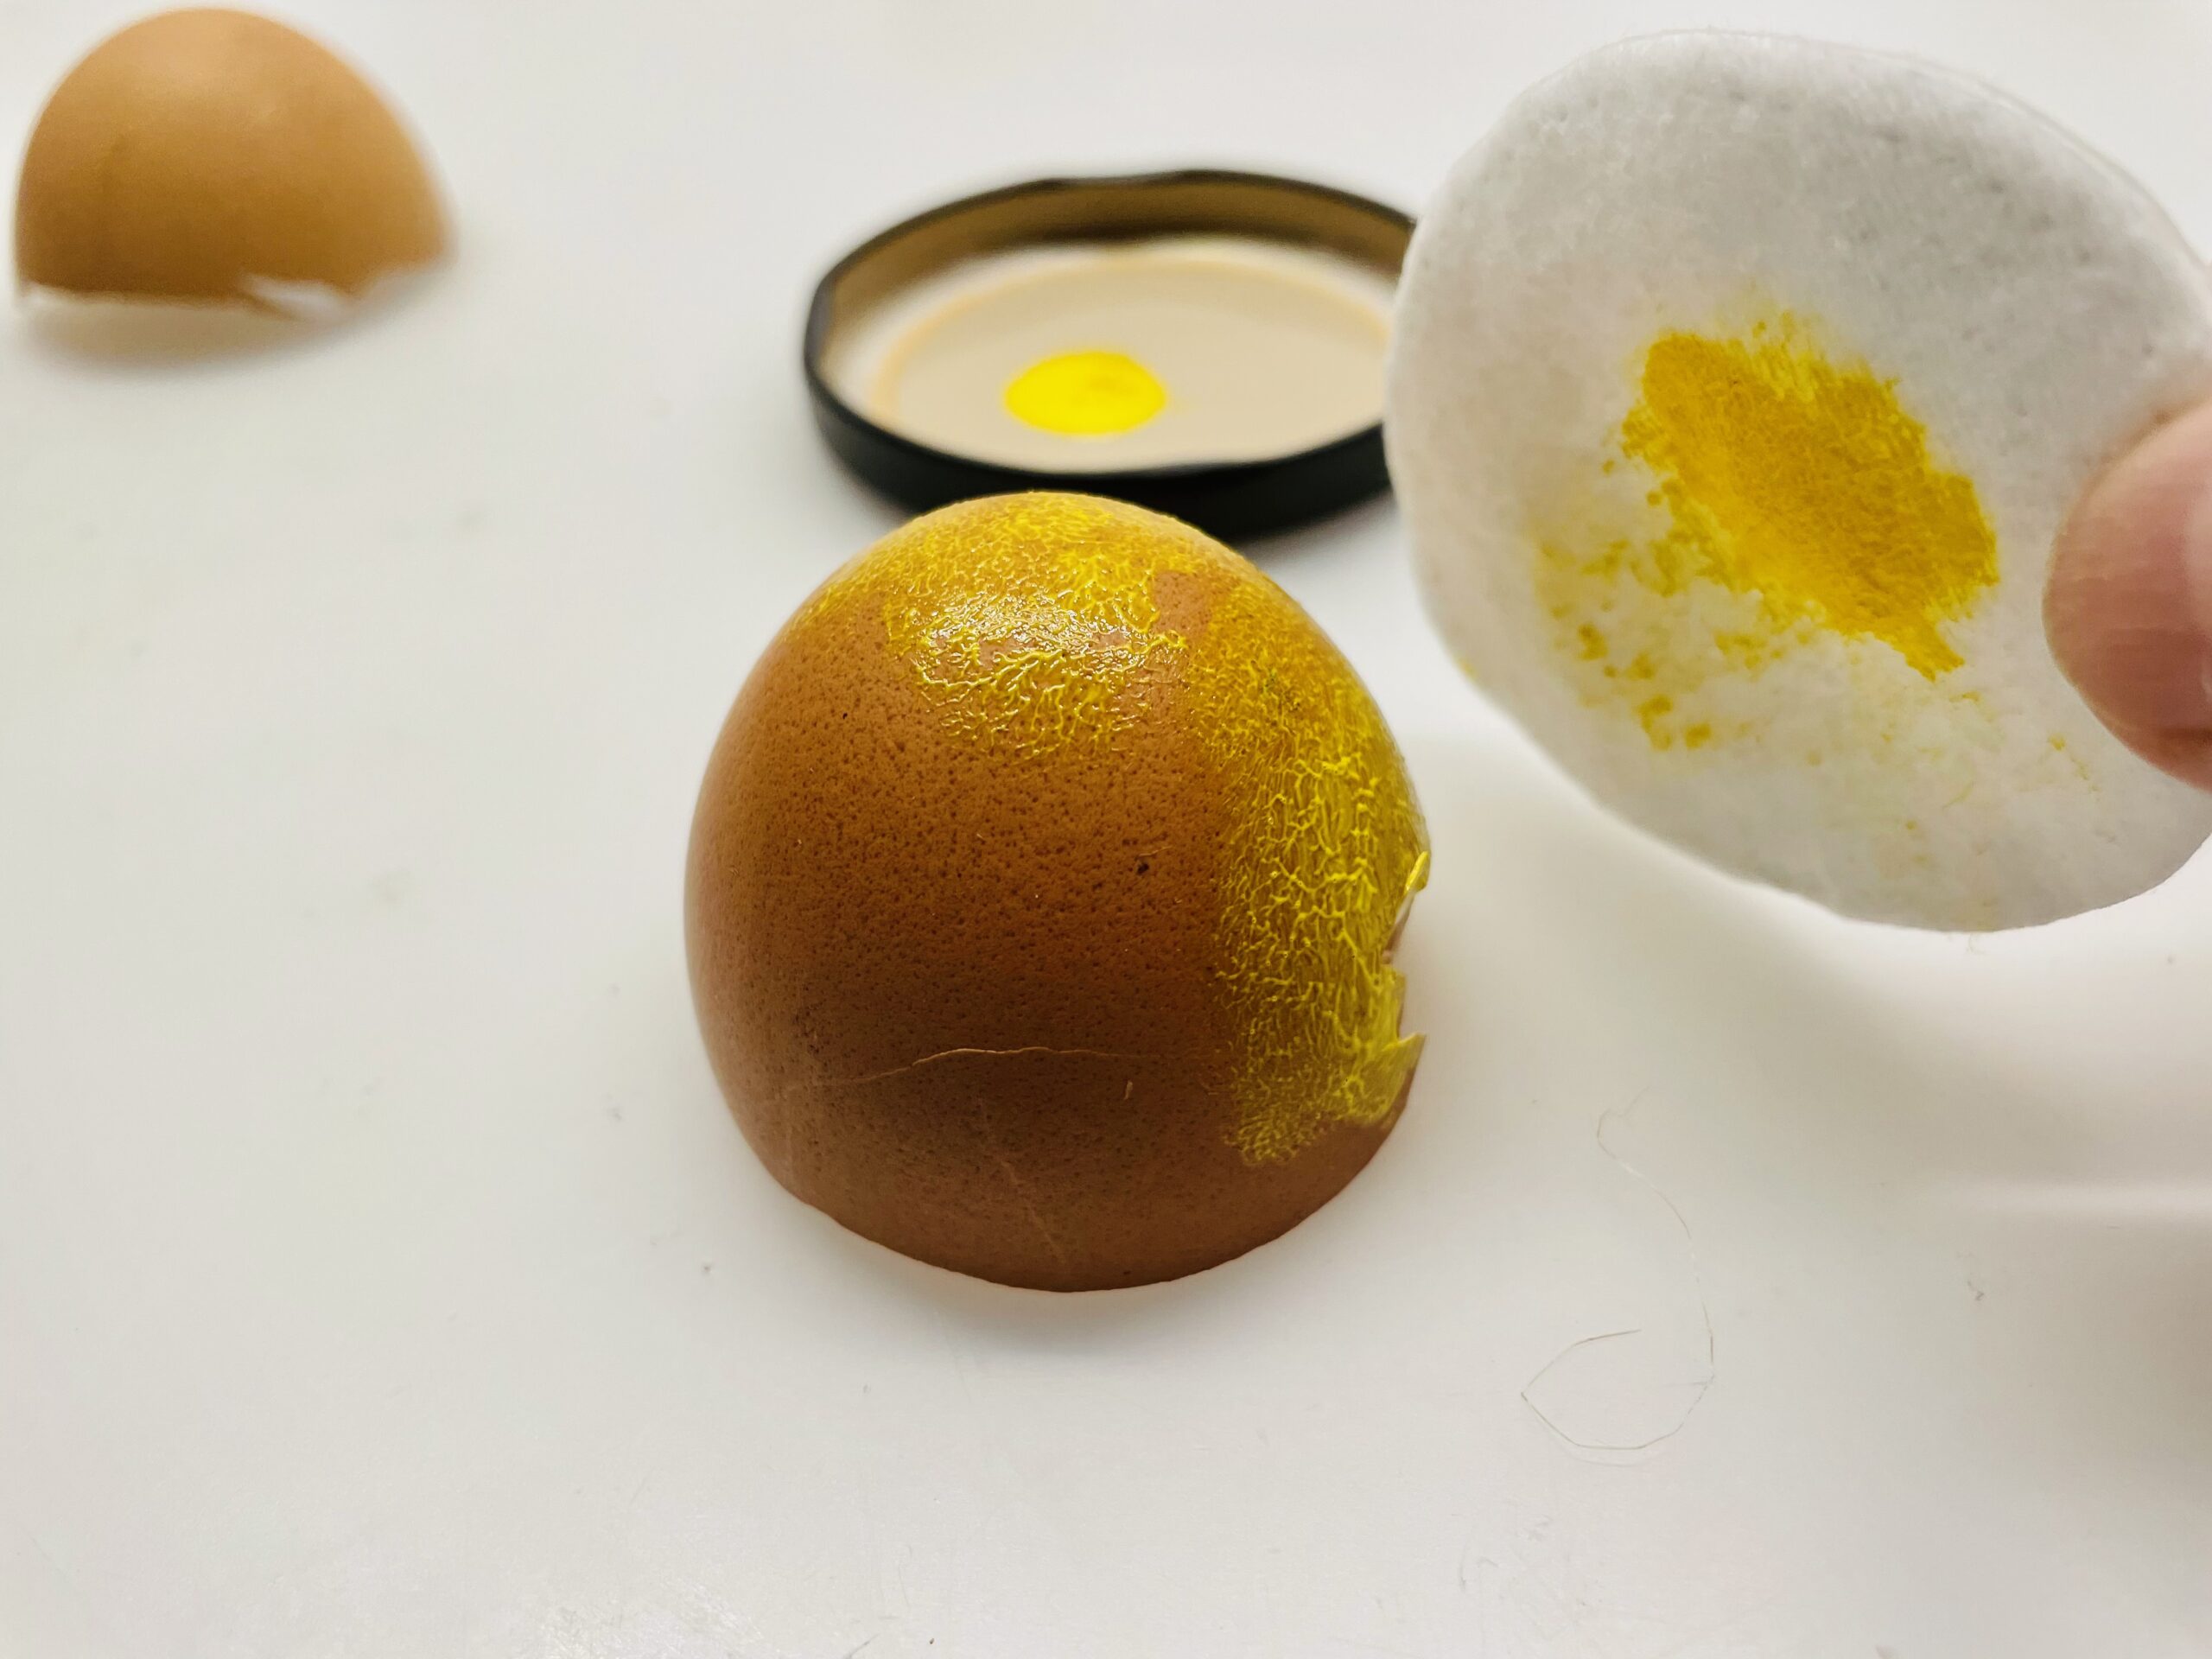 Bild zum Schritt 5 für das Bastel- und DIY-Abenteuer für Kinder: 'Nun tupft ihr die Farbe ganz vorsichtig auf die Eierschale.'